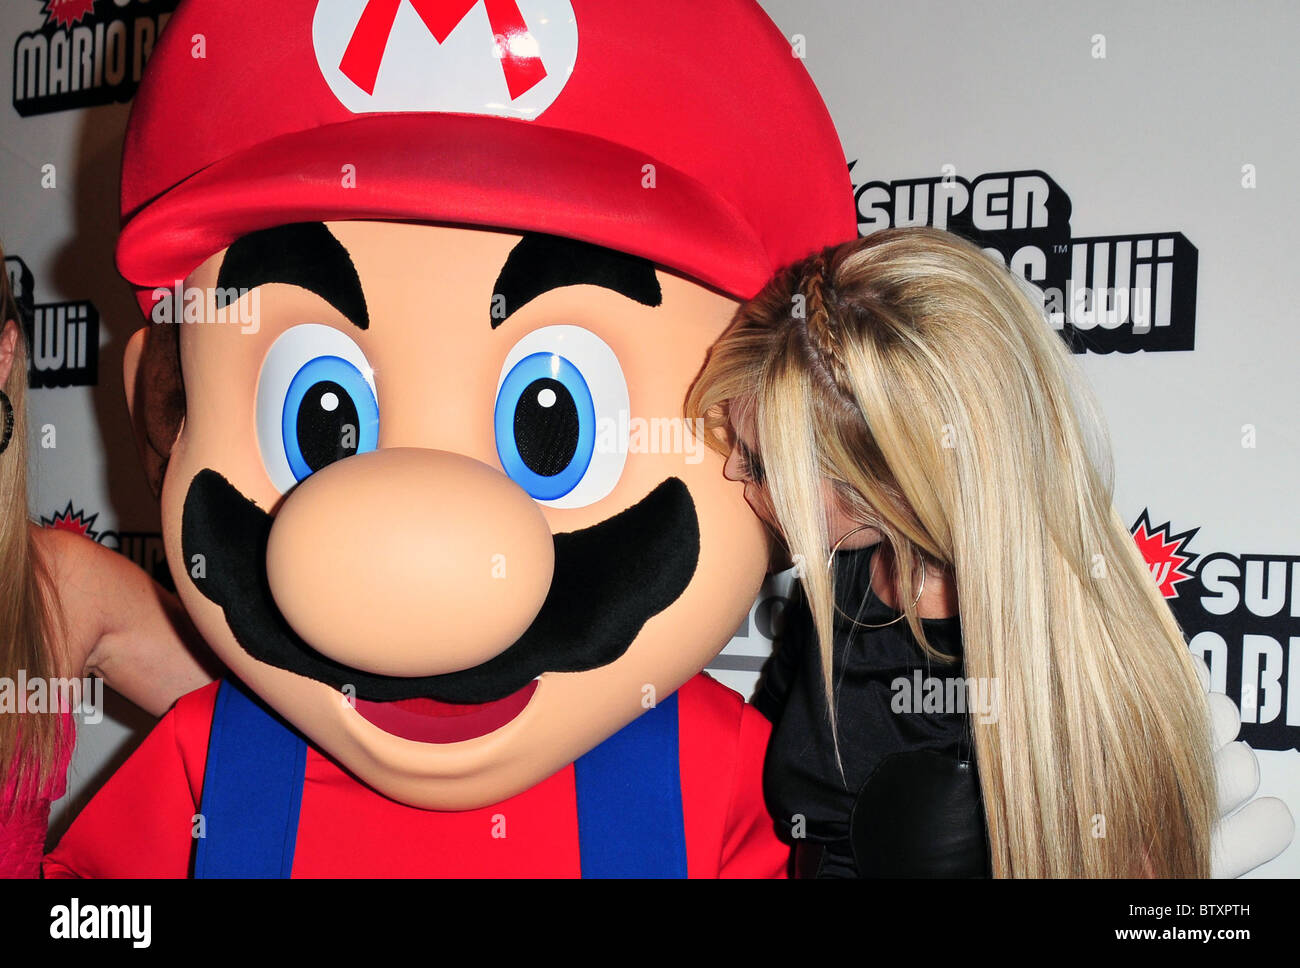 New Super Mario Bros. pour Wii jeu vidéo Lancement célèbre son 25e  anniversaire Photo Stock - Alamy